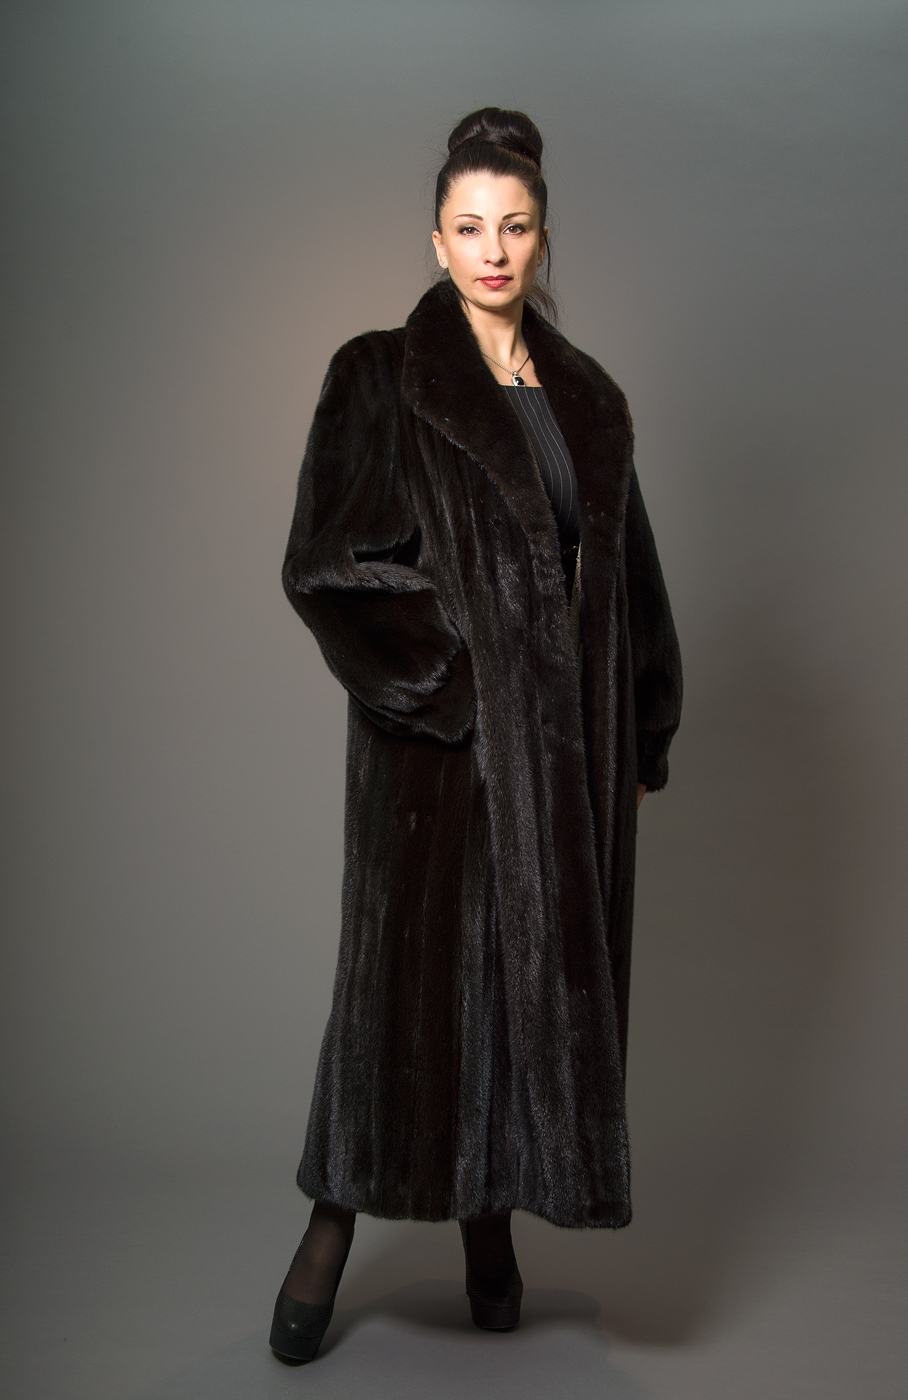 Woman wearing a long black mink coat